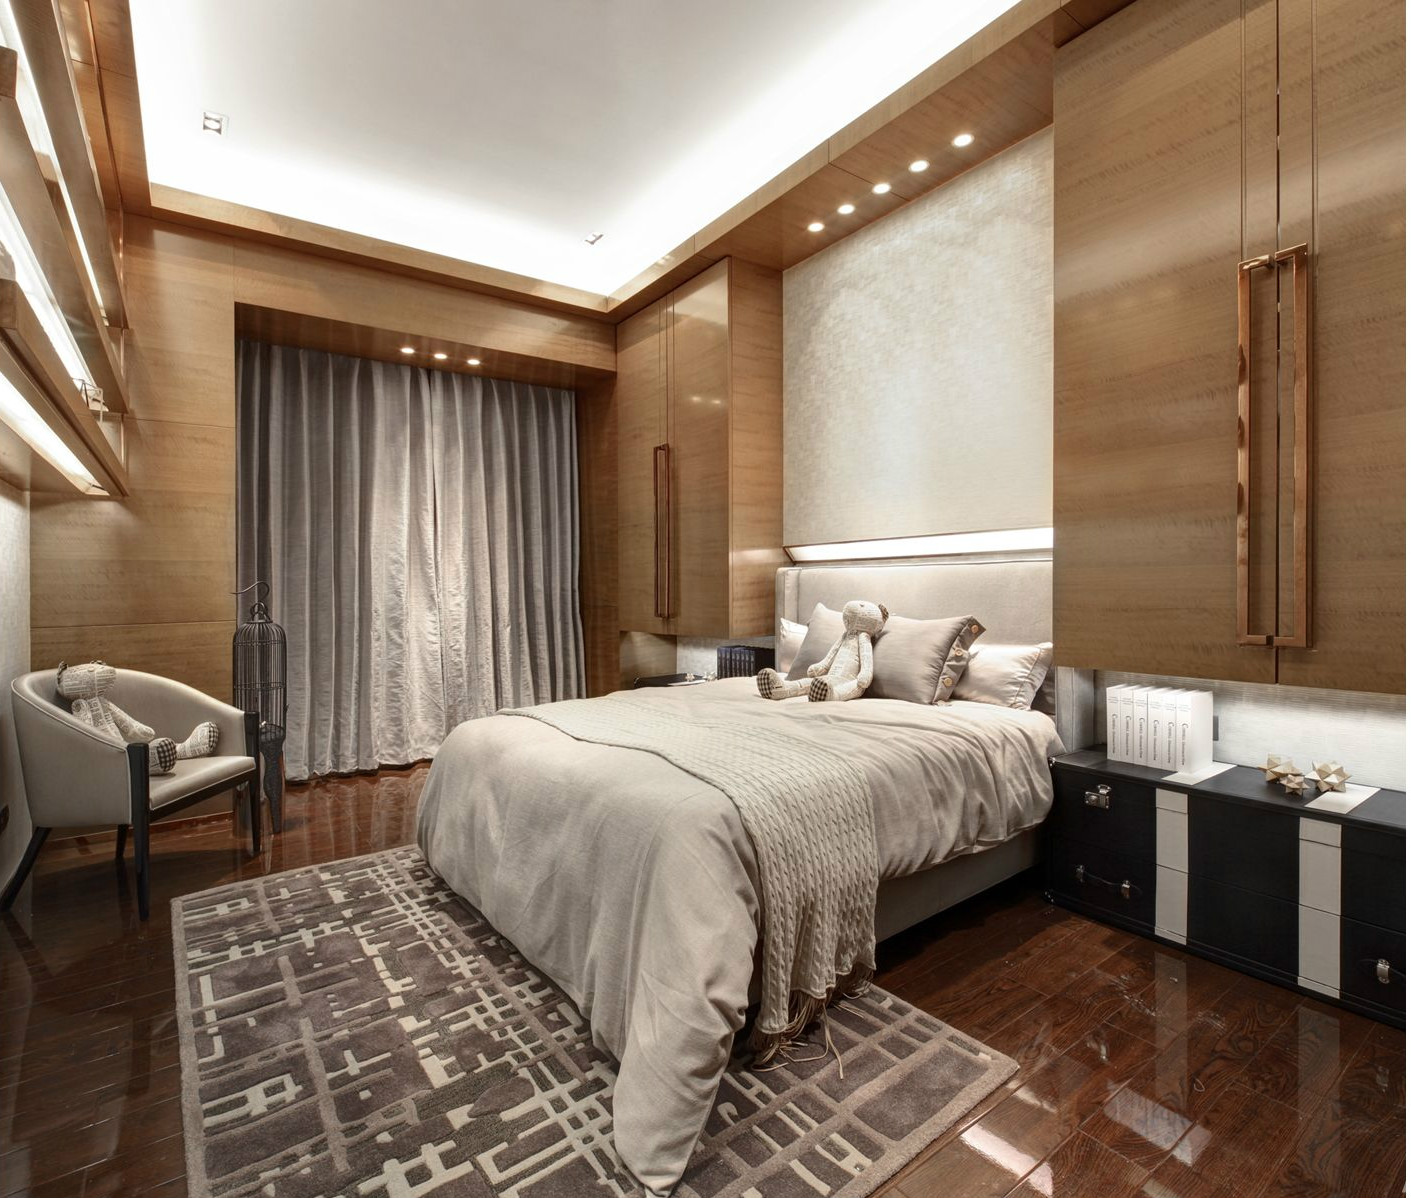 木质背景墙使主卧空间倍显艺术感与时尚感，顶面筒灯点缀，打造出高品质的卧室空间。